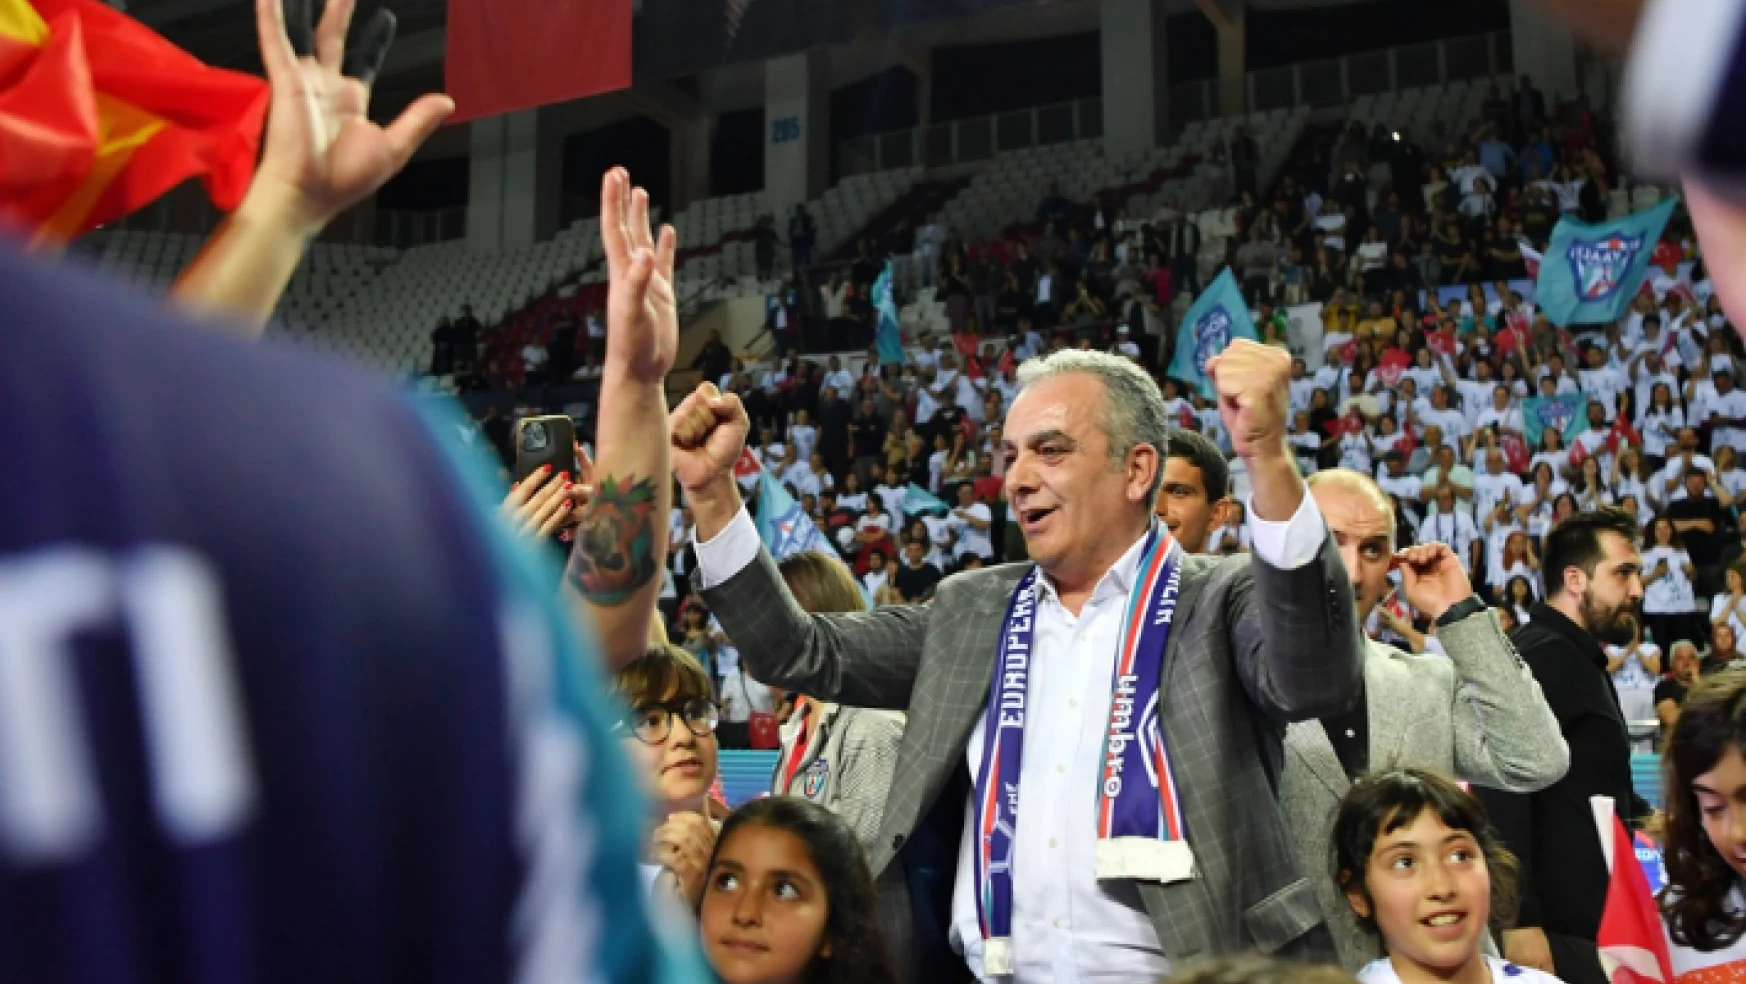 Konyaaltı Belediyesi Başkanı Semih Esen: 'Gururumuzsunuz Kızlar'